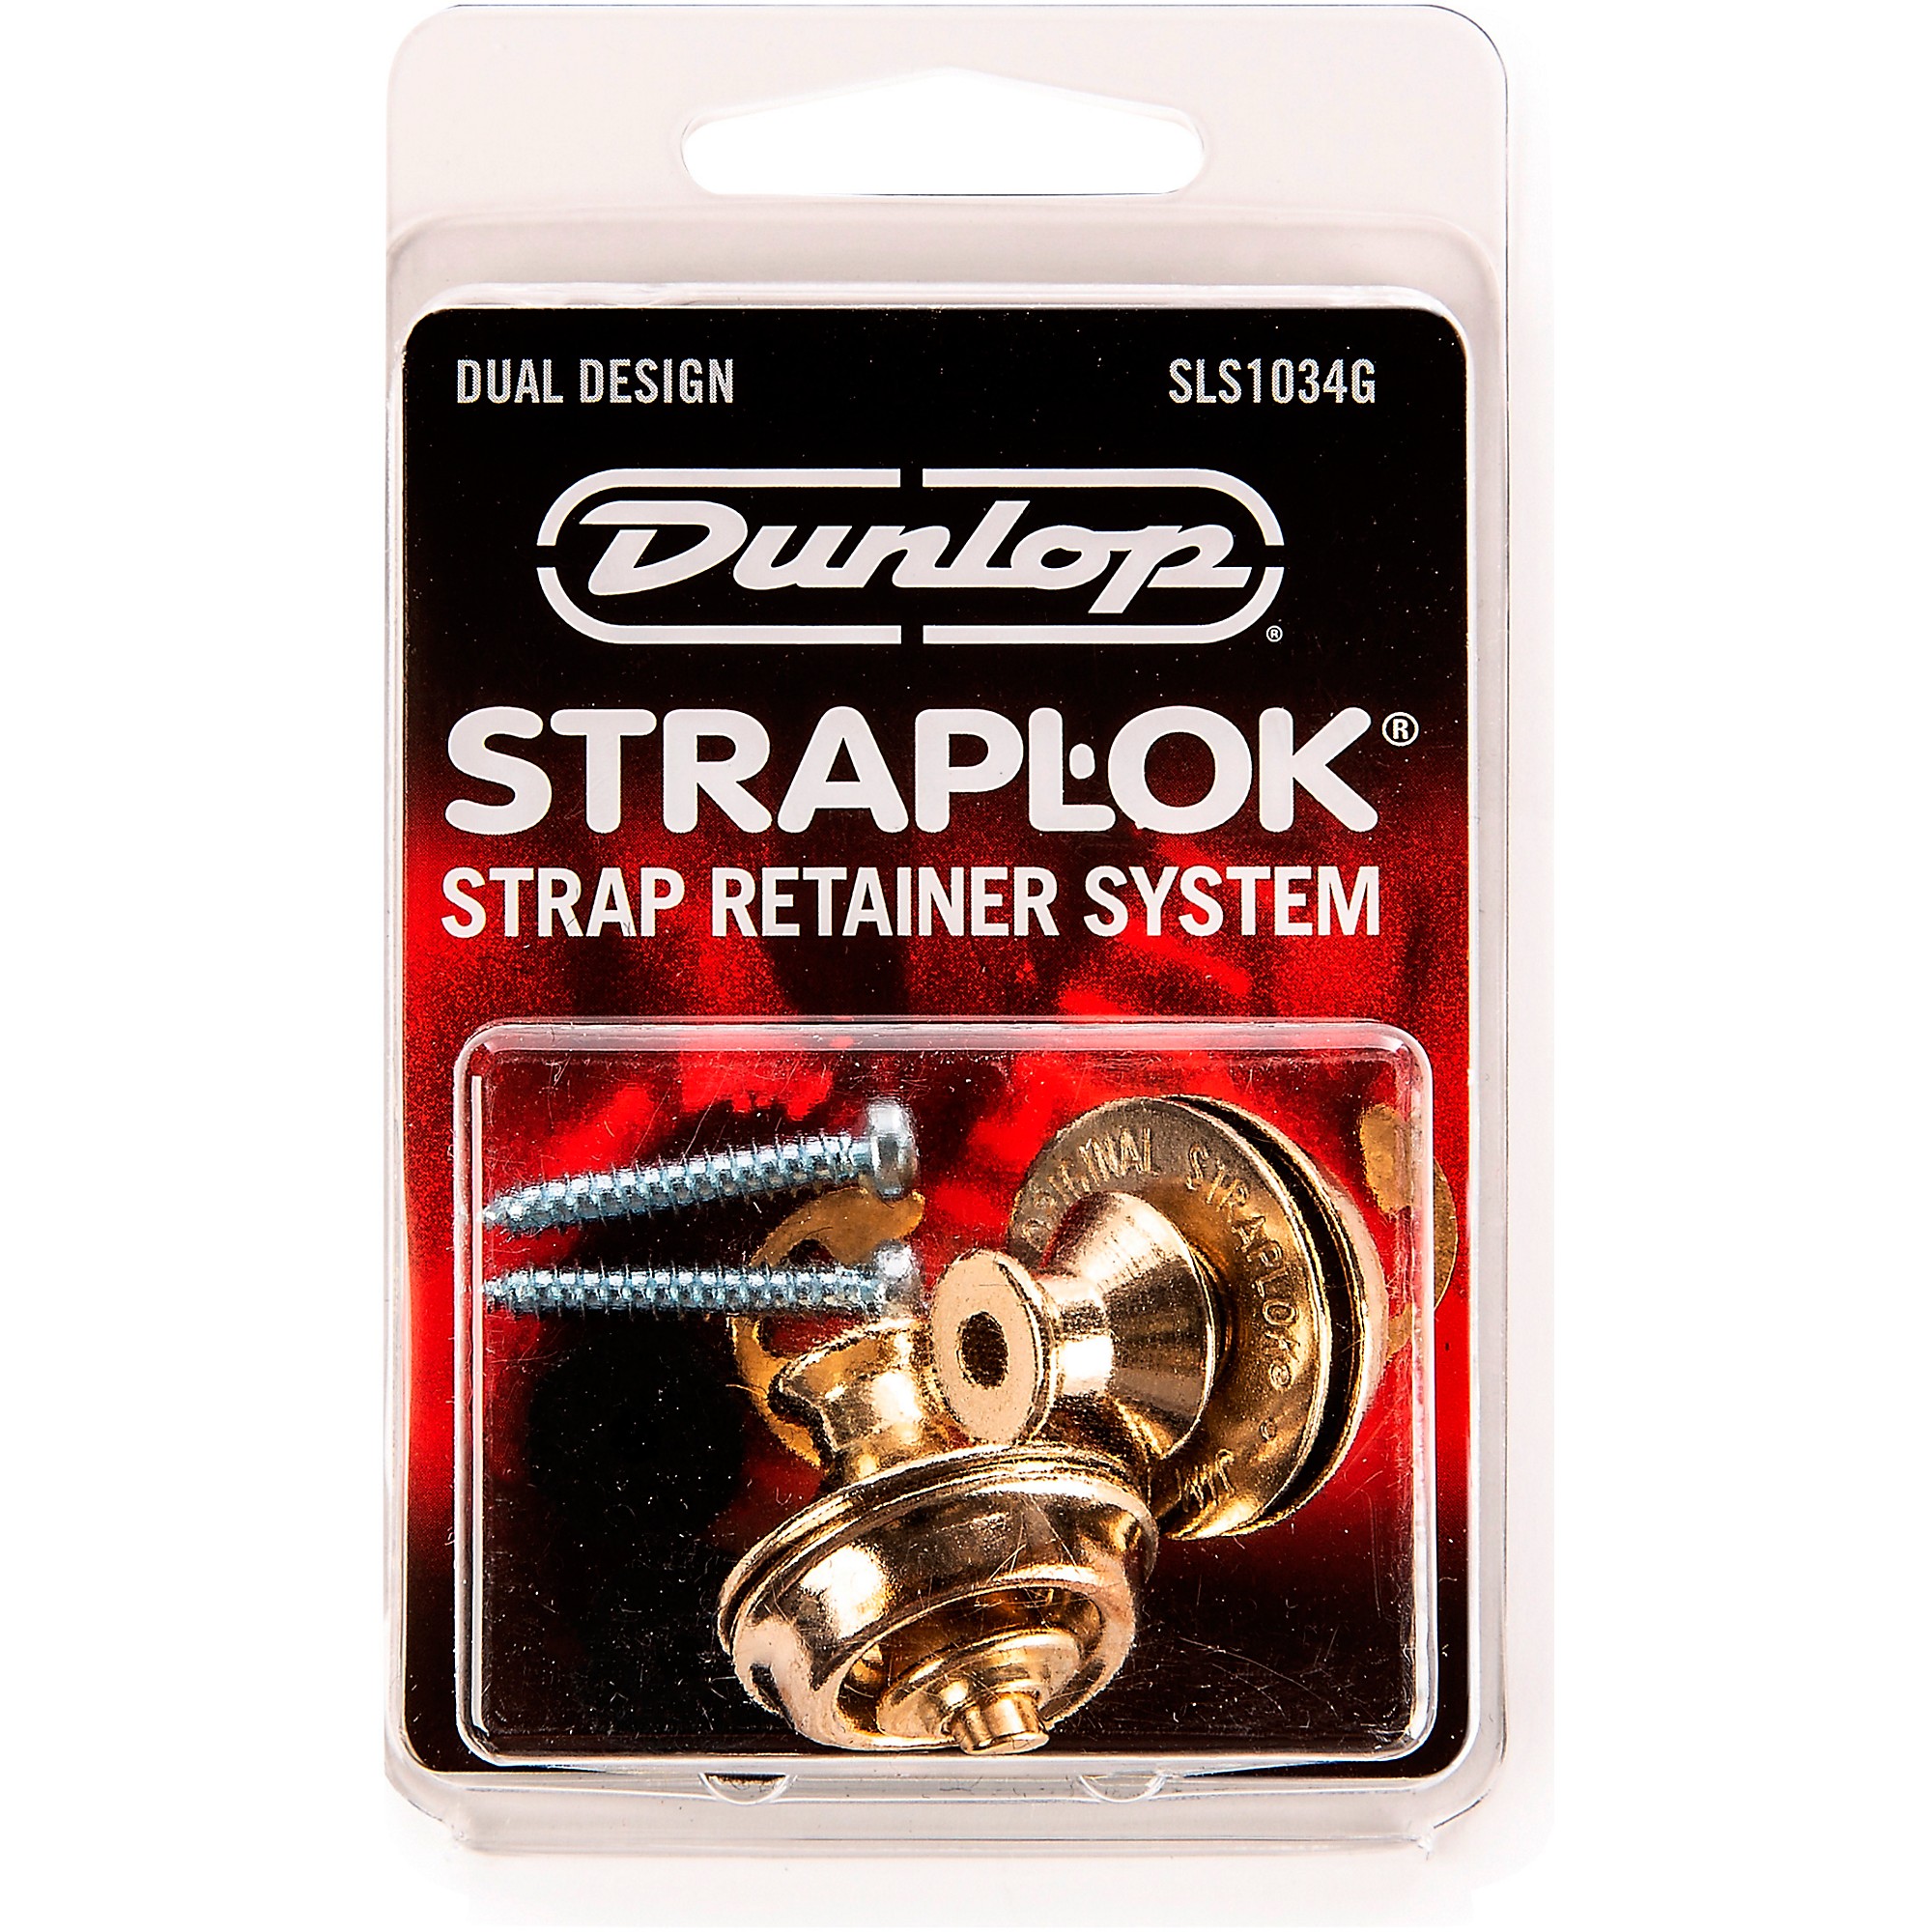 STRAPLOK® STRAP RETAINERS DUAL DESIGN - VINTAGE NICKEL - Dunlop